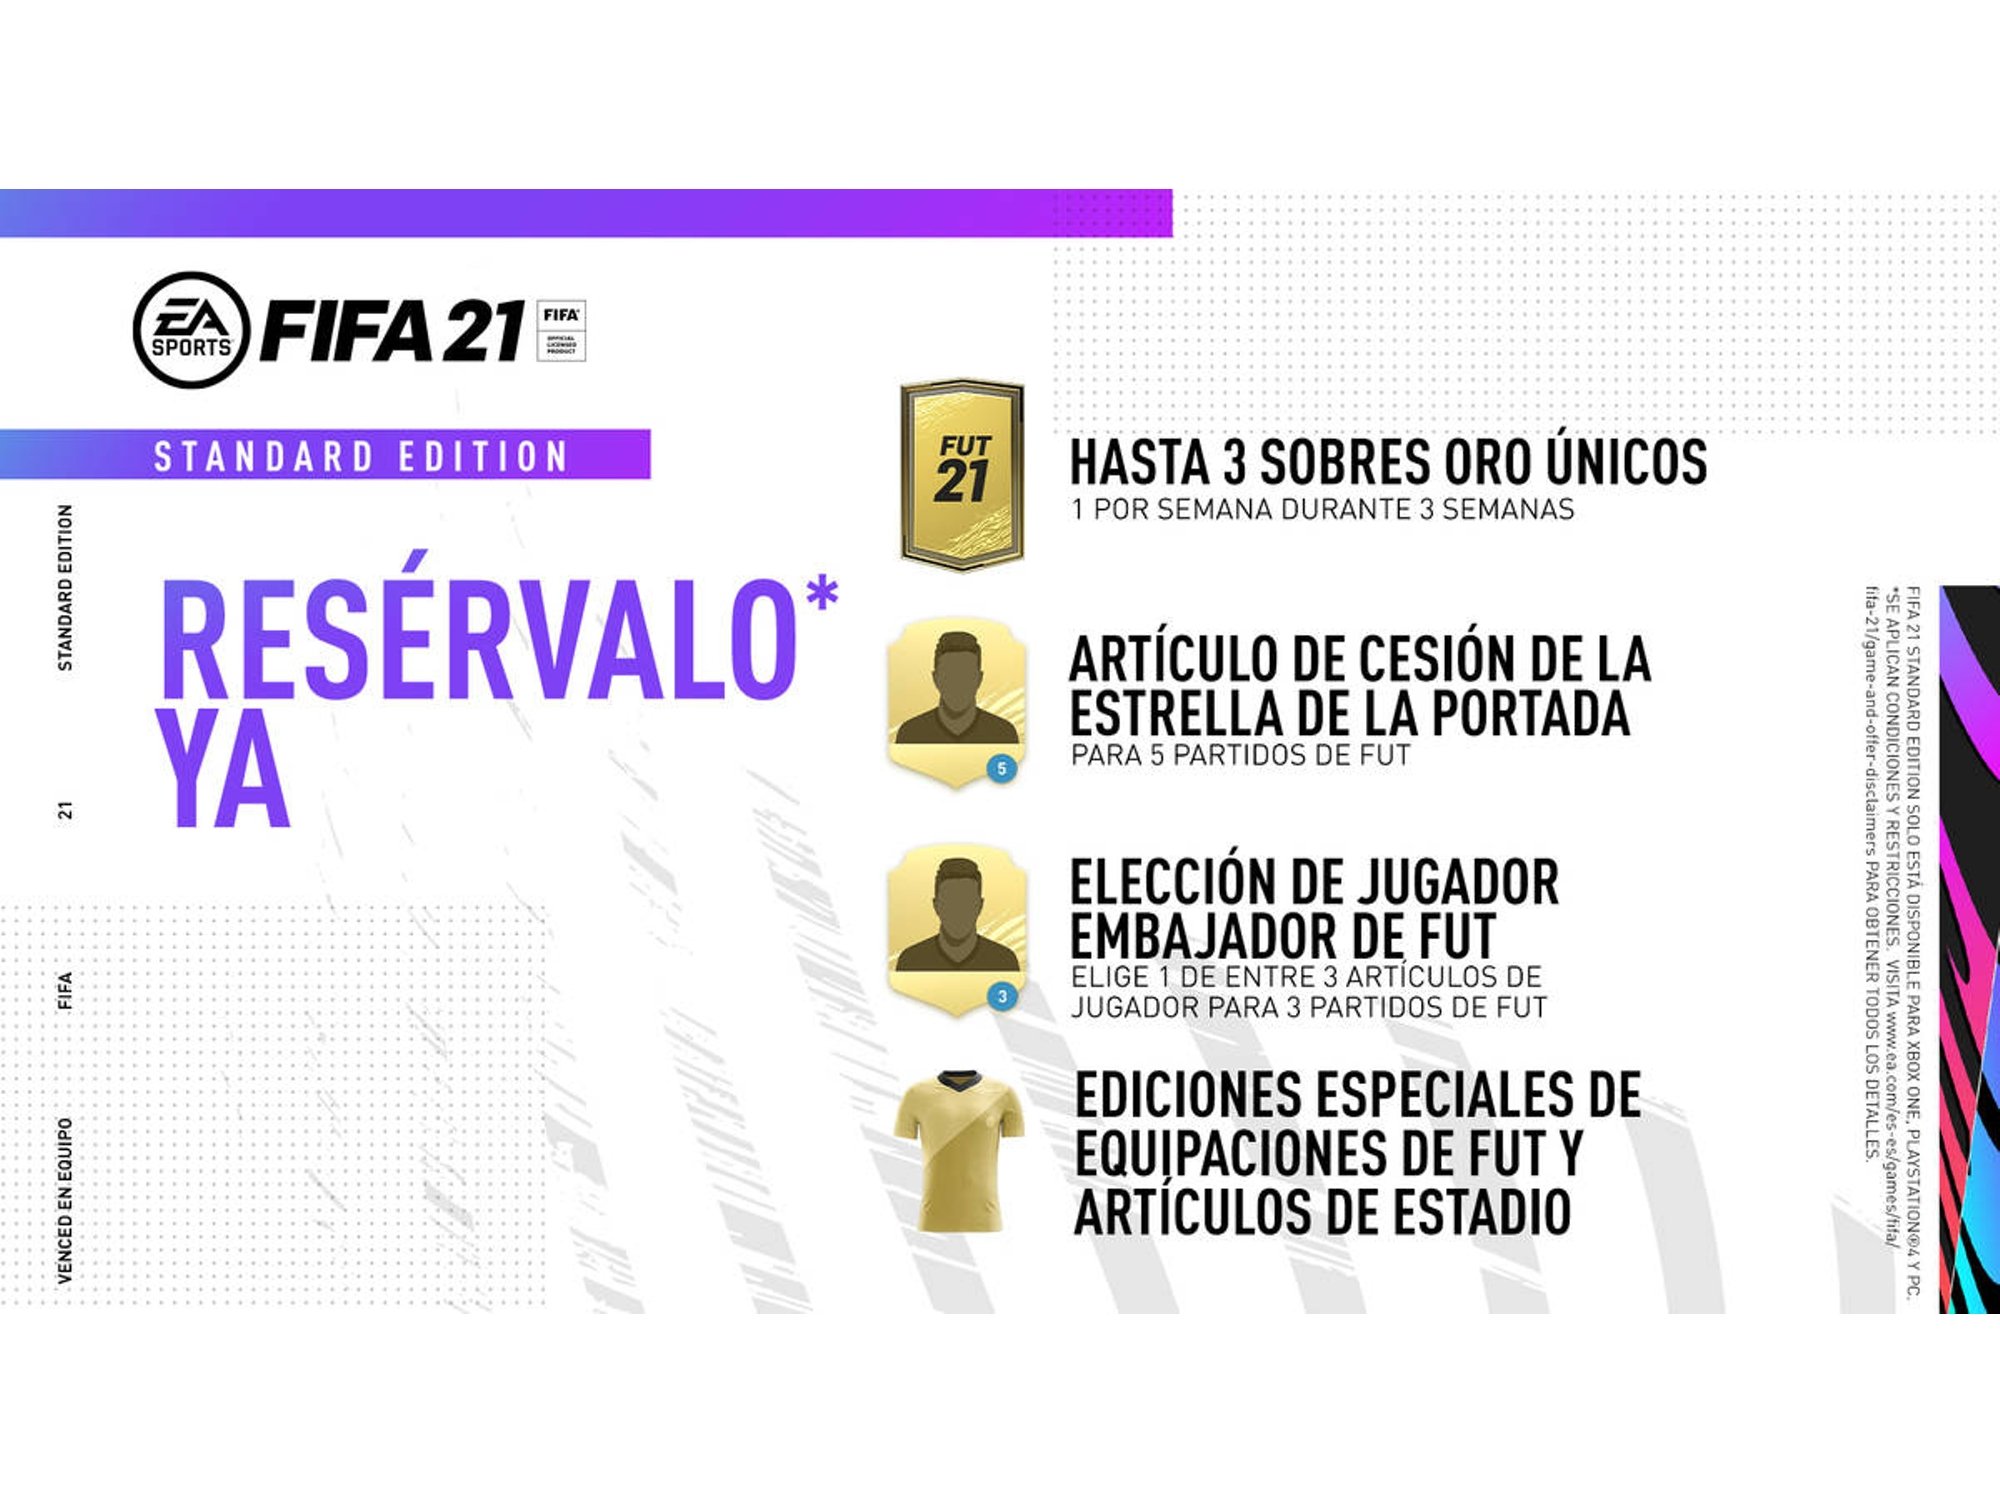 FIFA 21: Información y venta - Blog de Pccomponentes